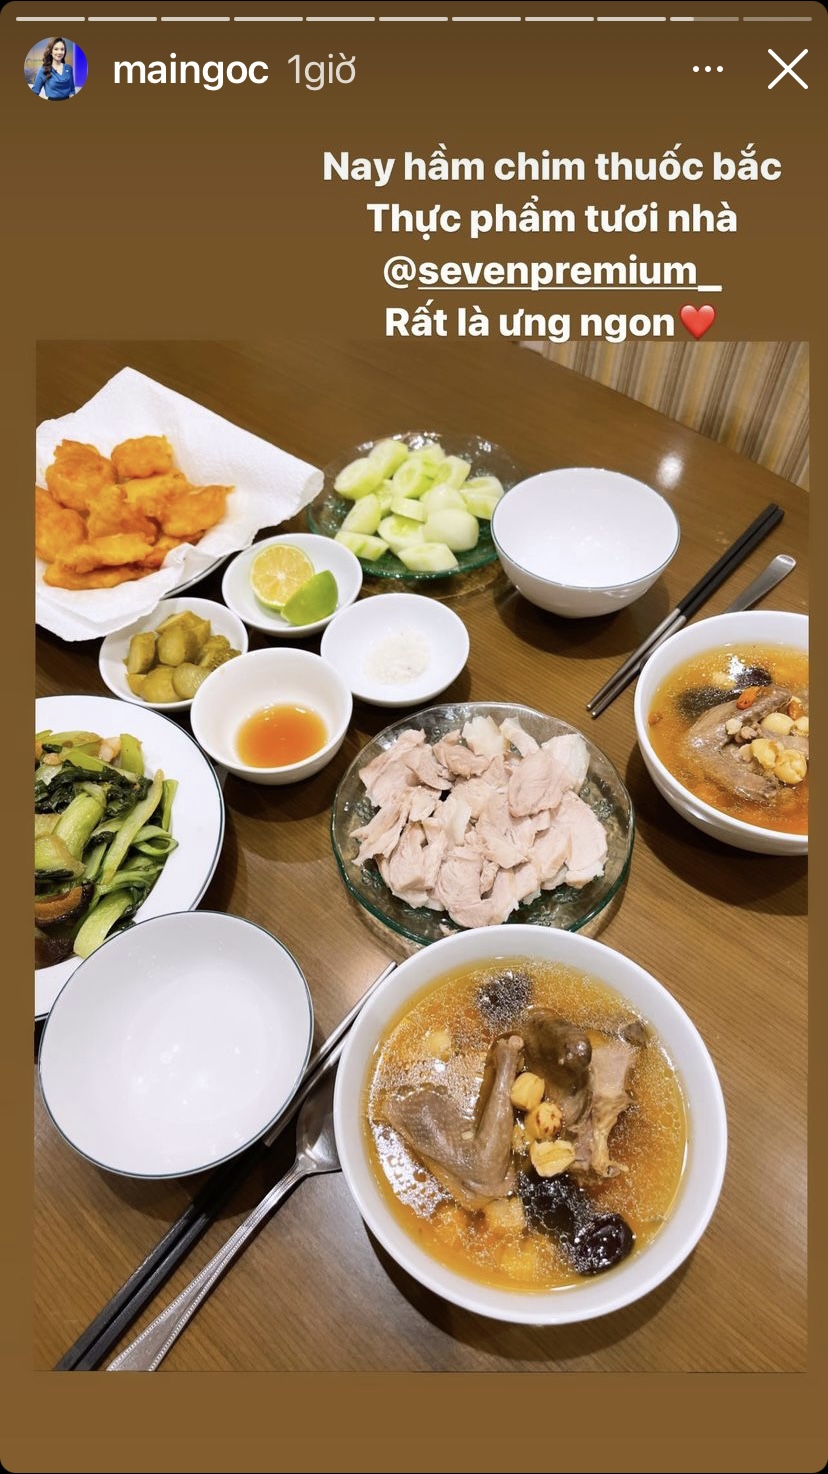 Mâm cơm nhà MC Mai Ngọc hom nay cũng ngập tràn những món hấp dẫn và bổ dưỡng như chim hầm thuốc bắc, thịt luộc, rau xào...